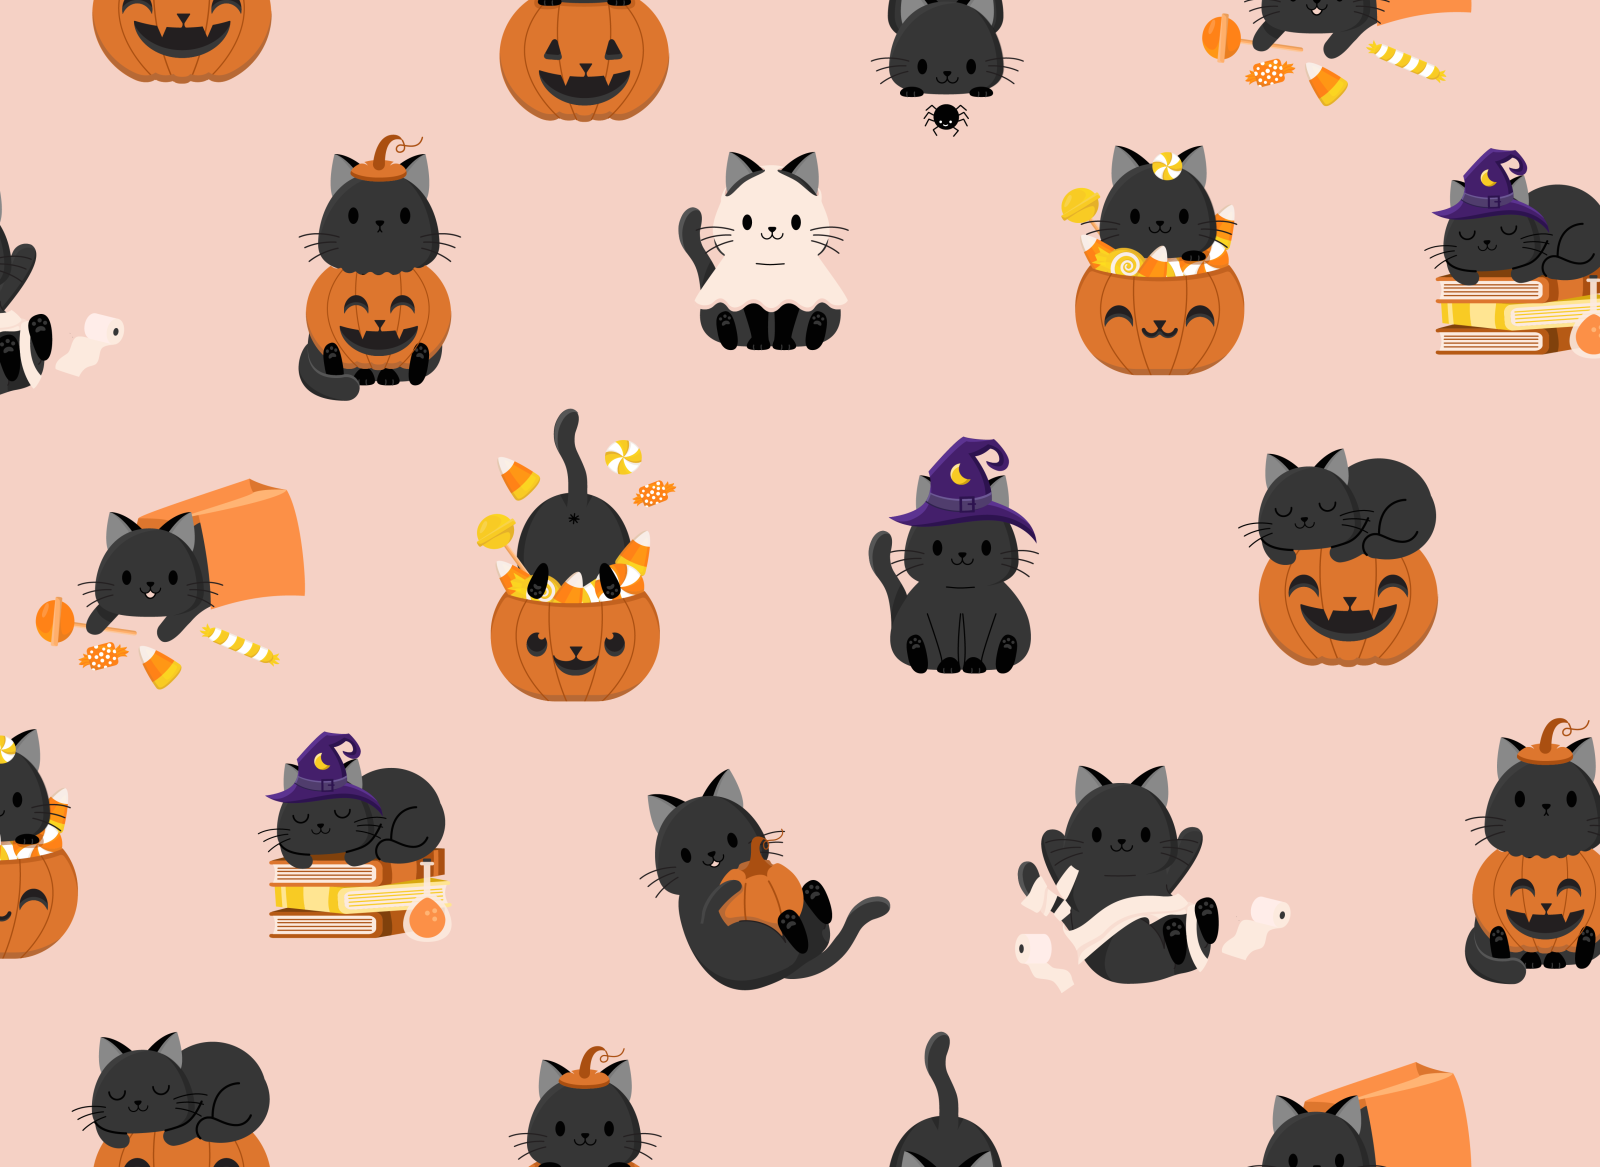 Halloween background wallpaper vector in orange  Premium Vector  Illustration  rawpixel